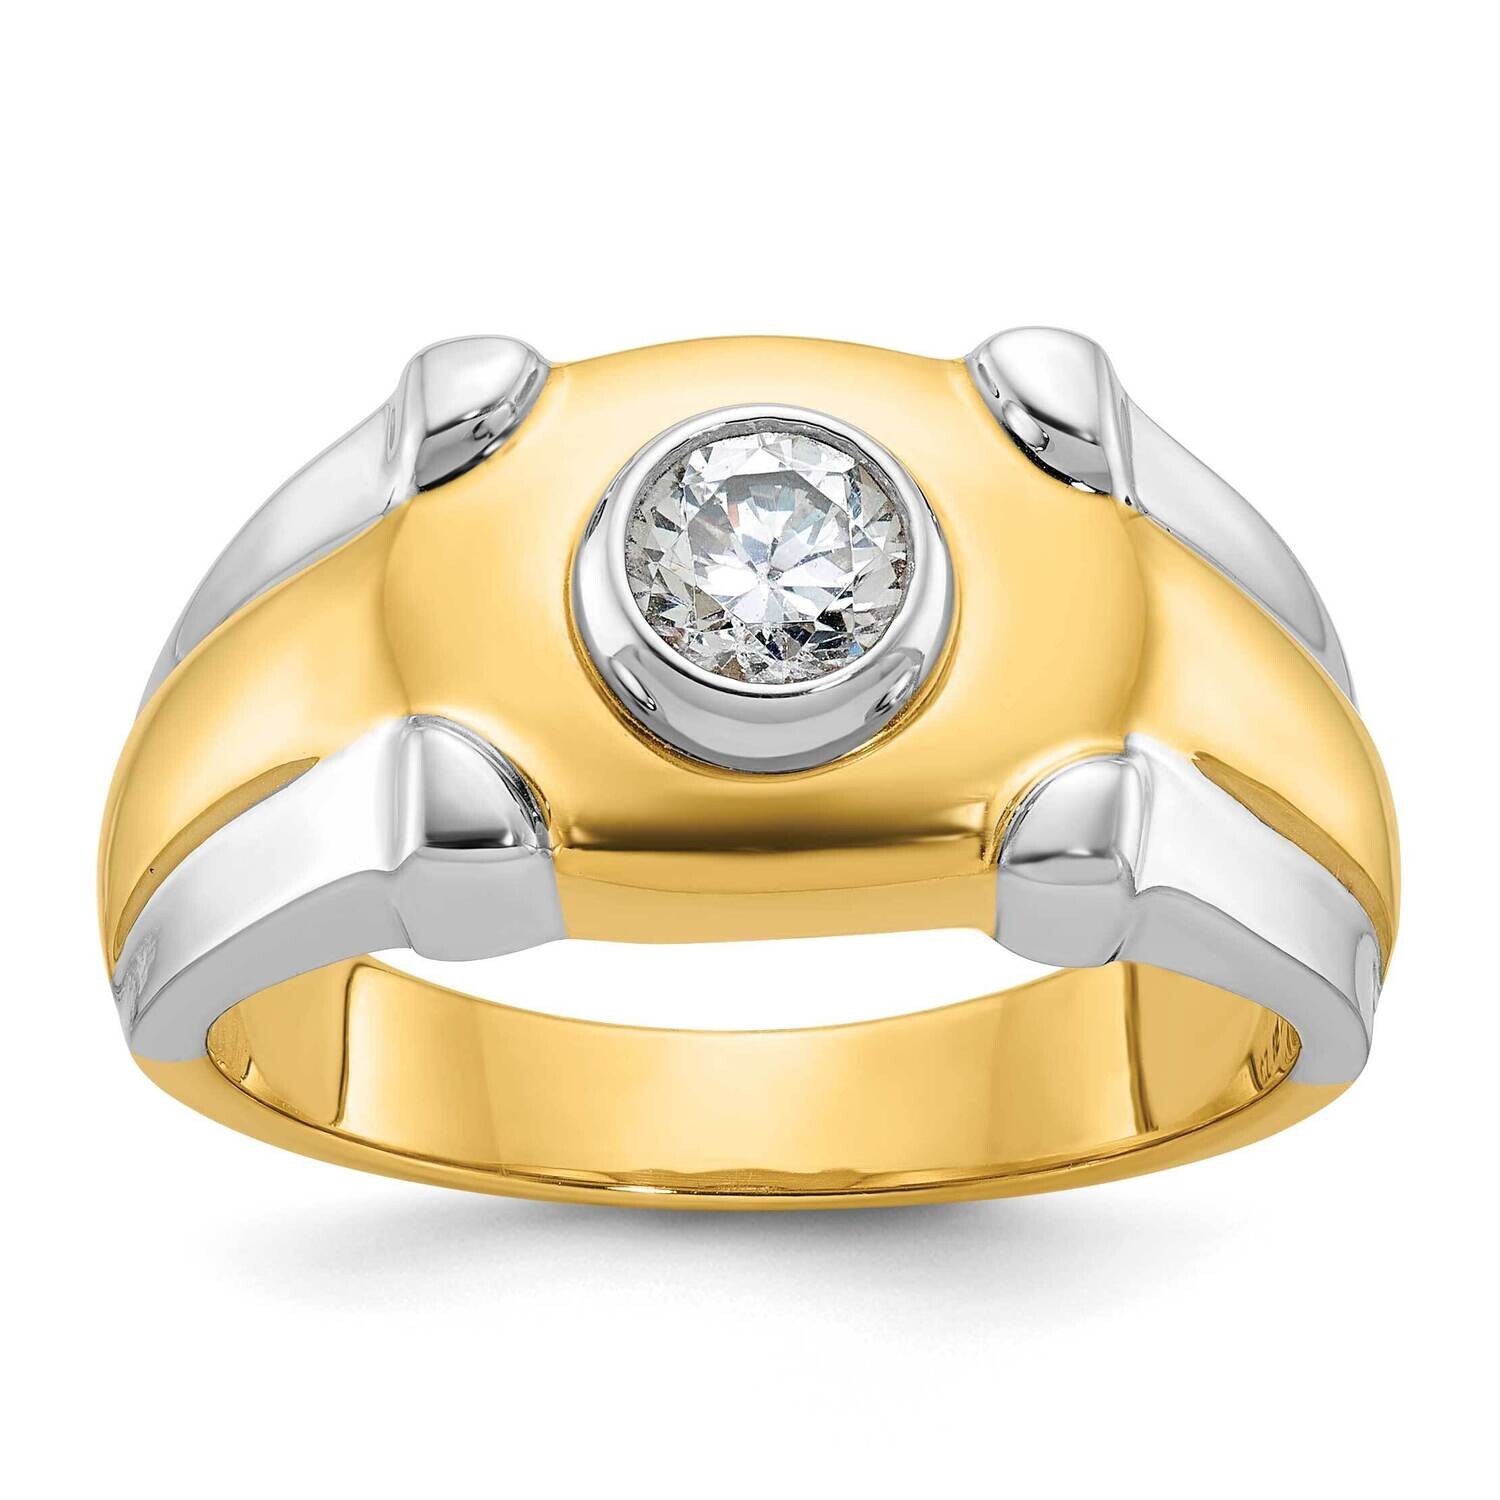 Ibgoodman Men's Diamond Ring Mounting 14k Two-Tone Gold B56898-4YW